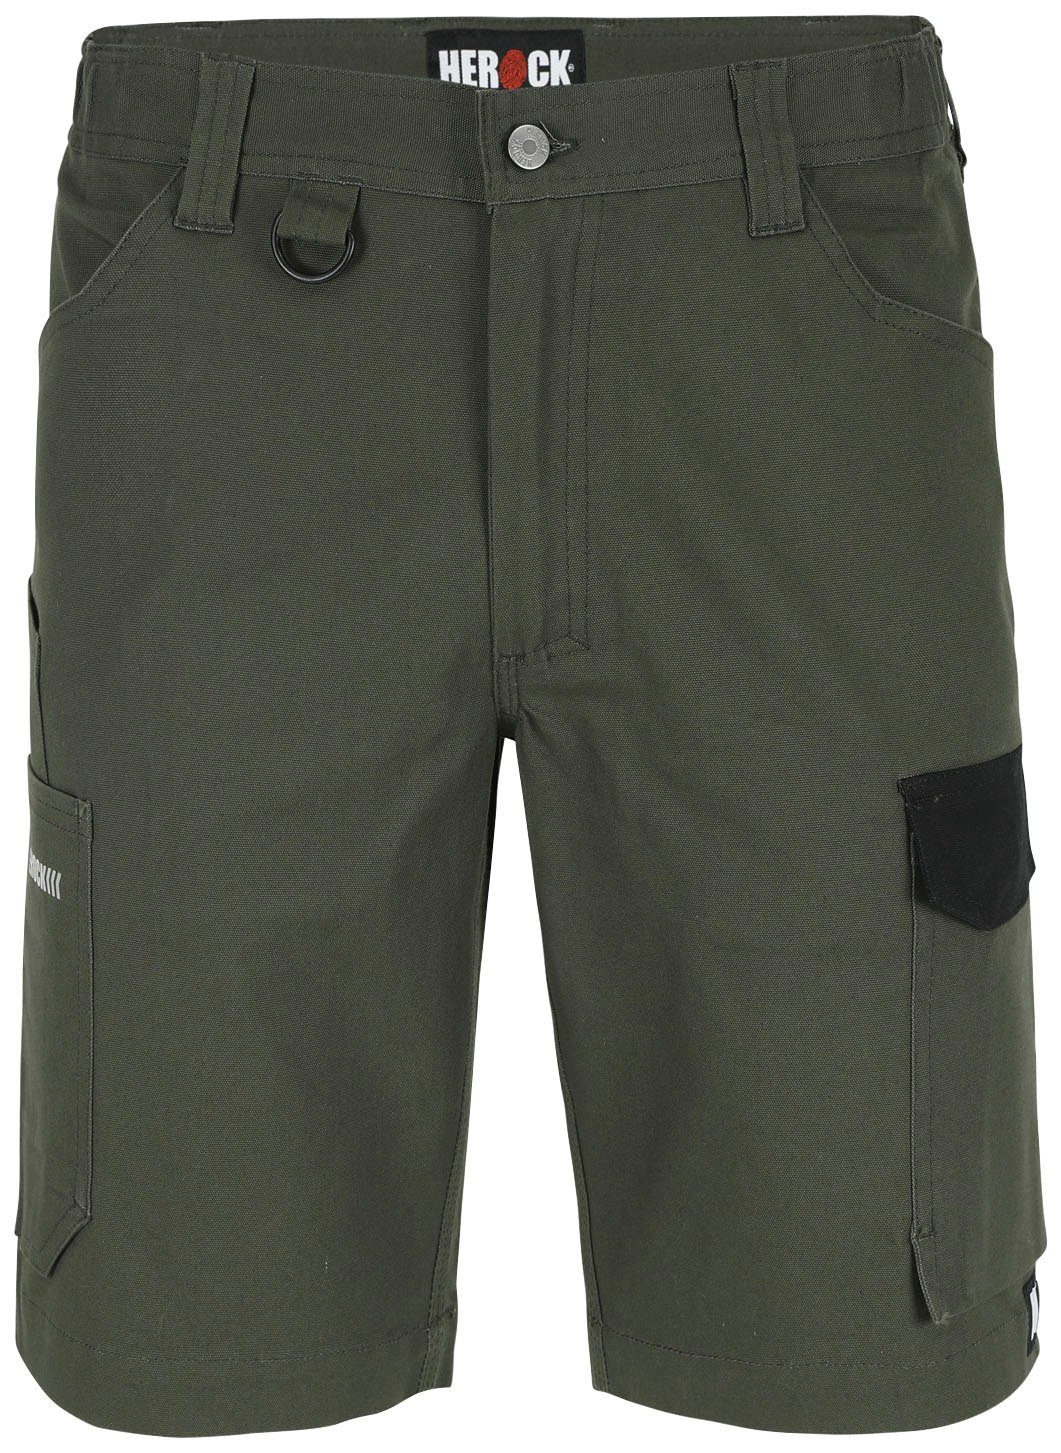 Herock Shorts Bargo Multi-Pocket, mit 2-Wege-Stretch-Einsatz, verschiedene Farben dunkel khaki